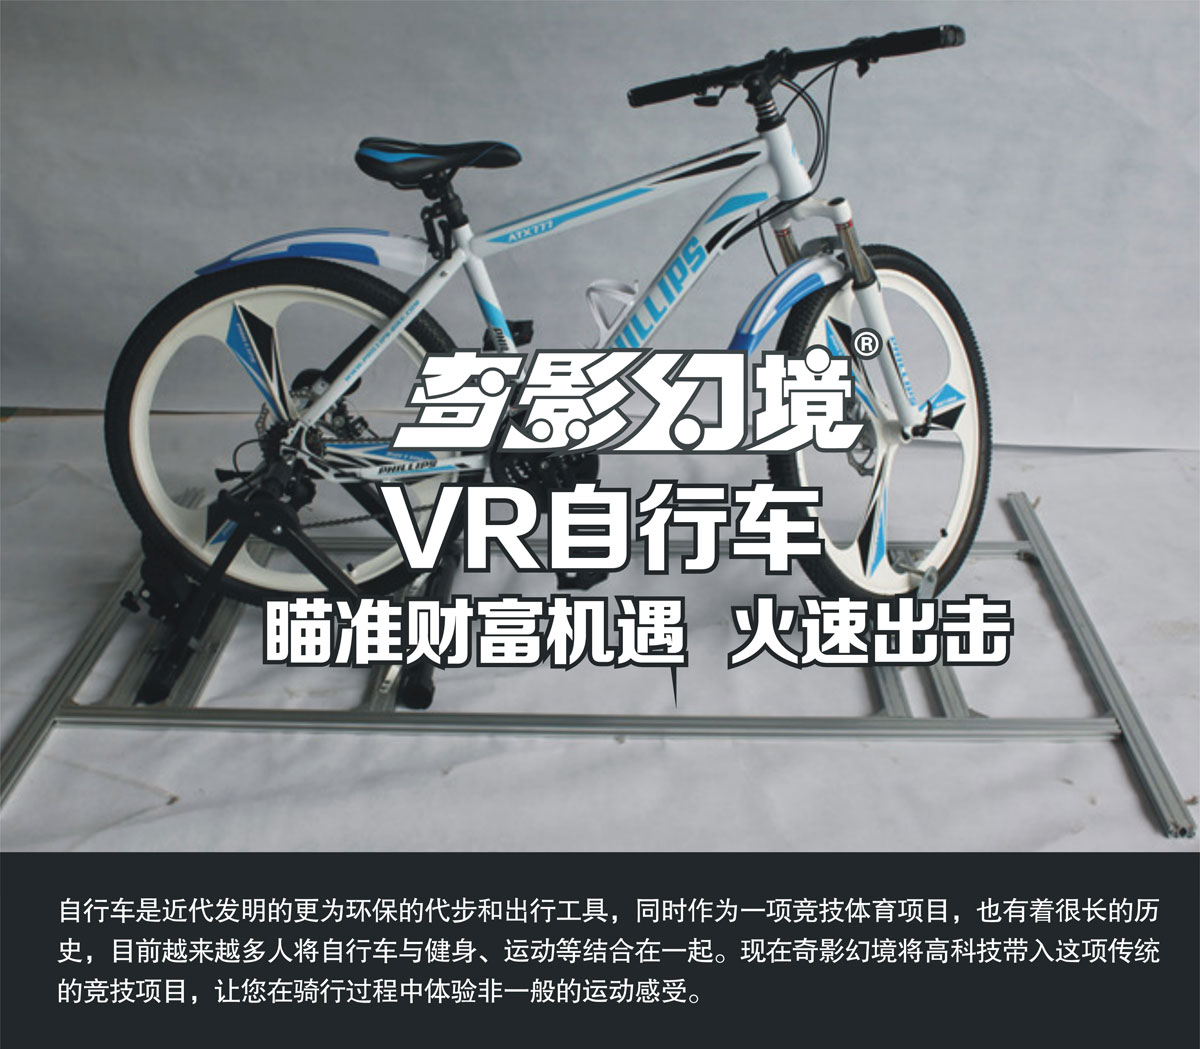 01-奇影幻境VR自行車瞄準財富機遇.jpg